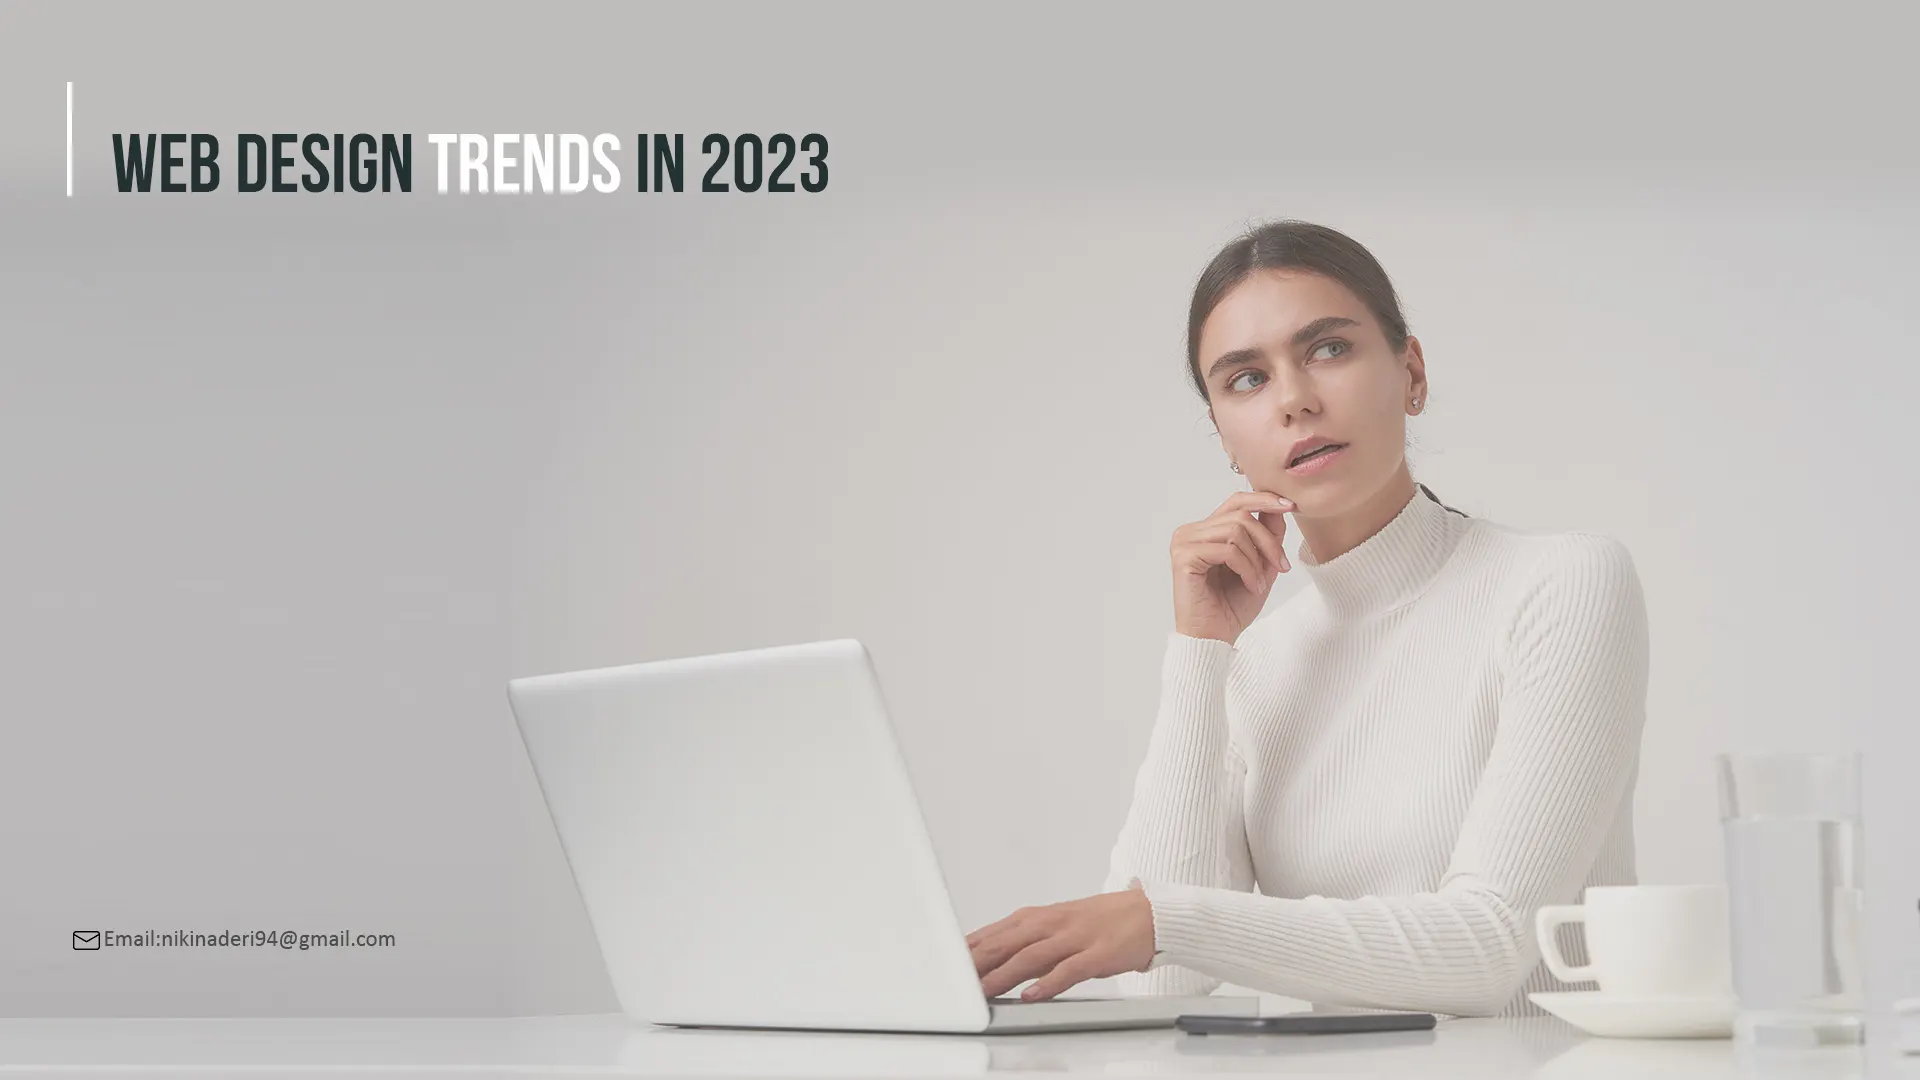 Website Design Trends 2023